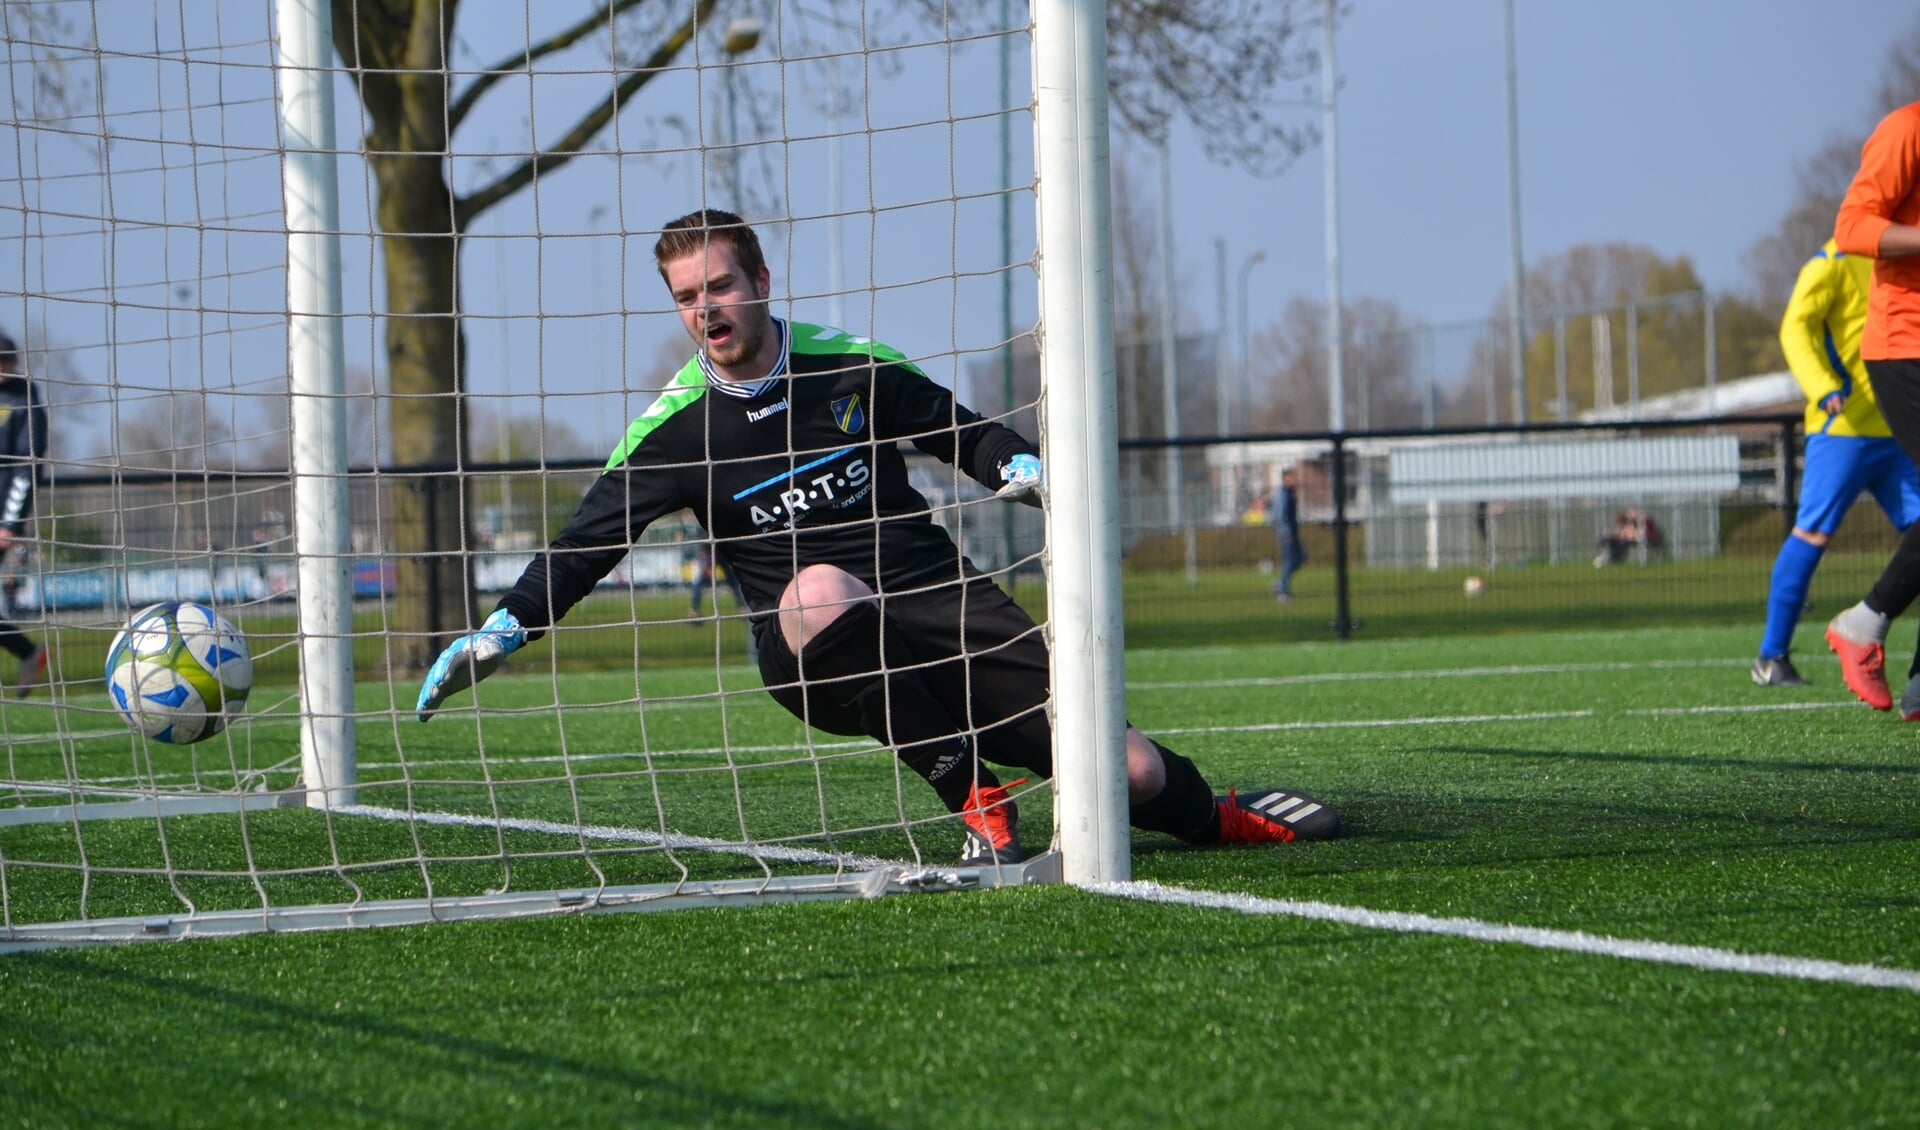 Een vertrouwd beeld dit seizoen: de doelman van FC Uden moet weer eens vissen. Hier tijdens de 5-1 nederlaag tegen SIOL. (foto: Gerno de Haas)